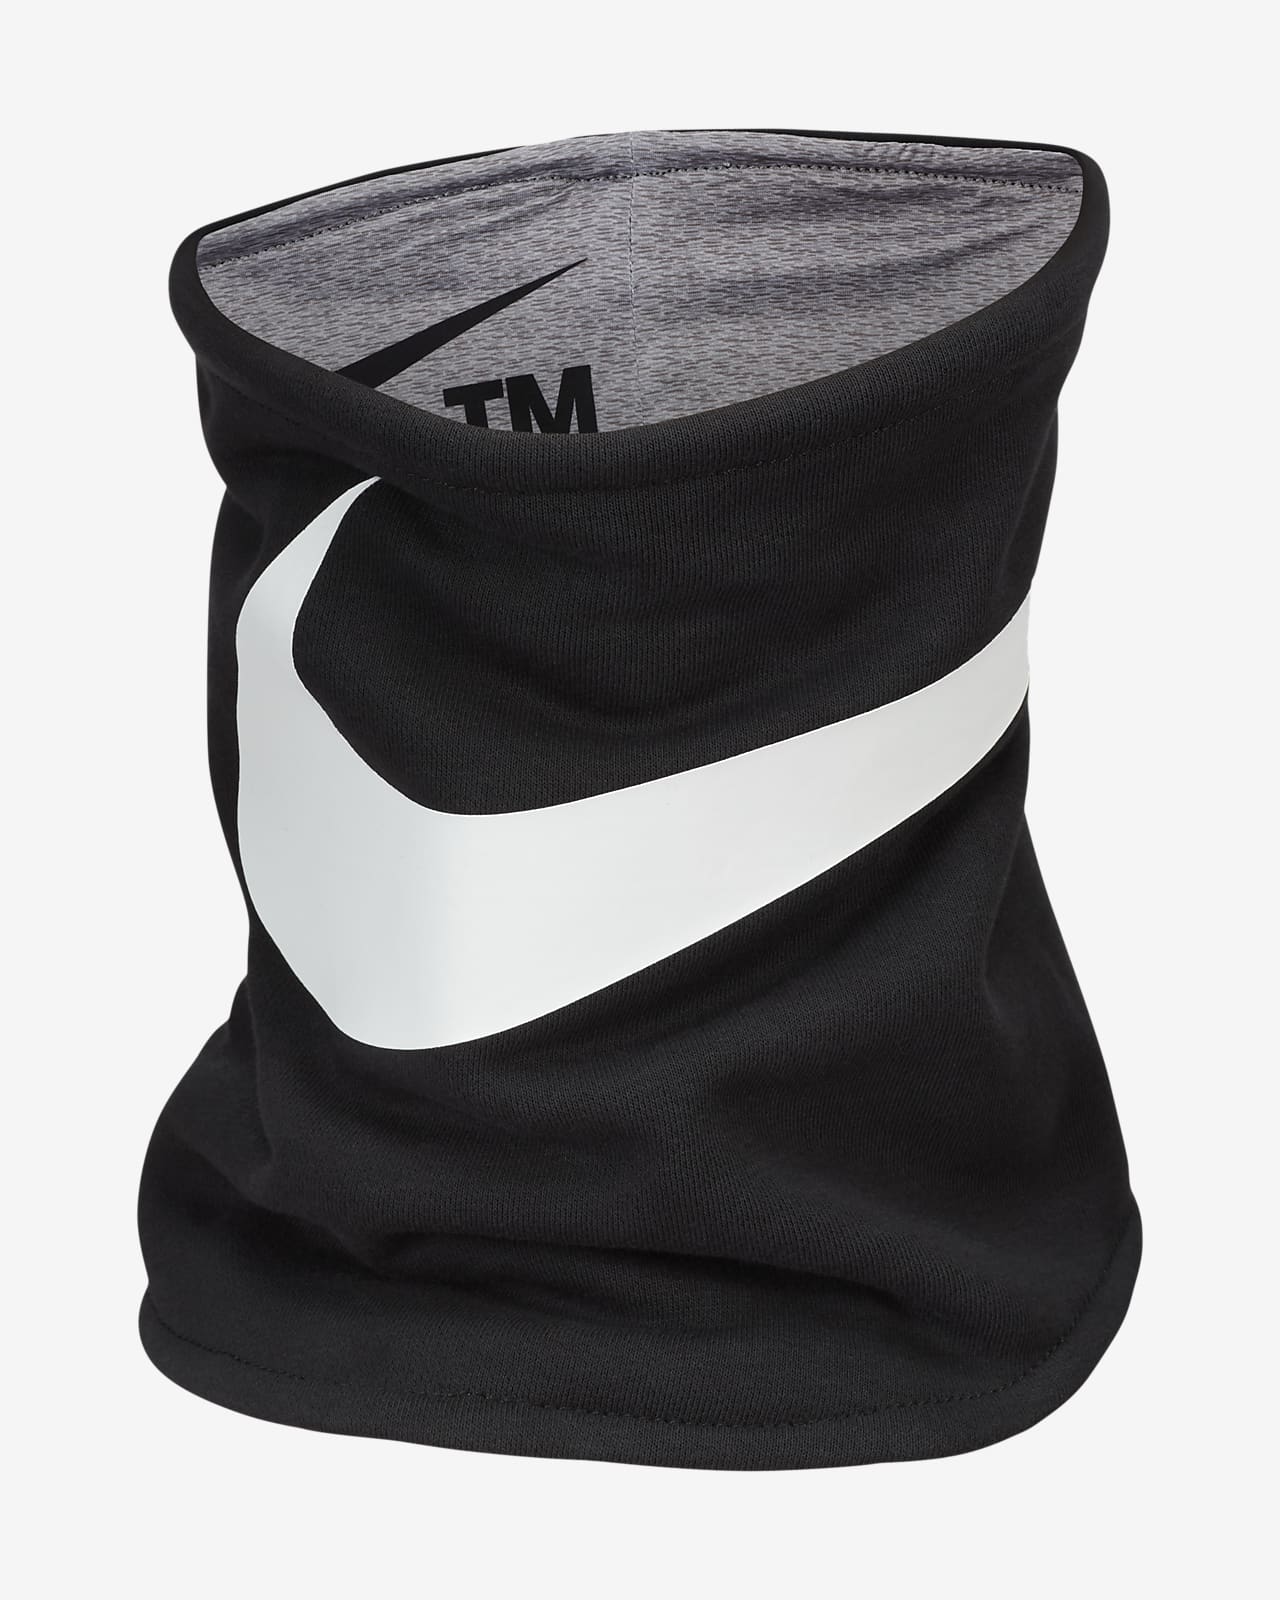 Cache cou Nike Fleece réversible gris